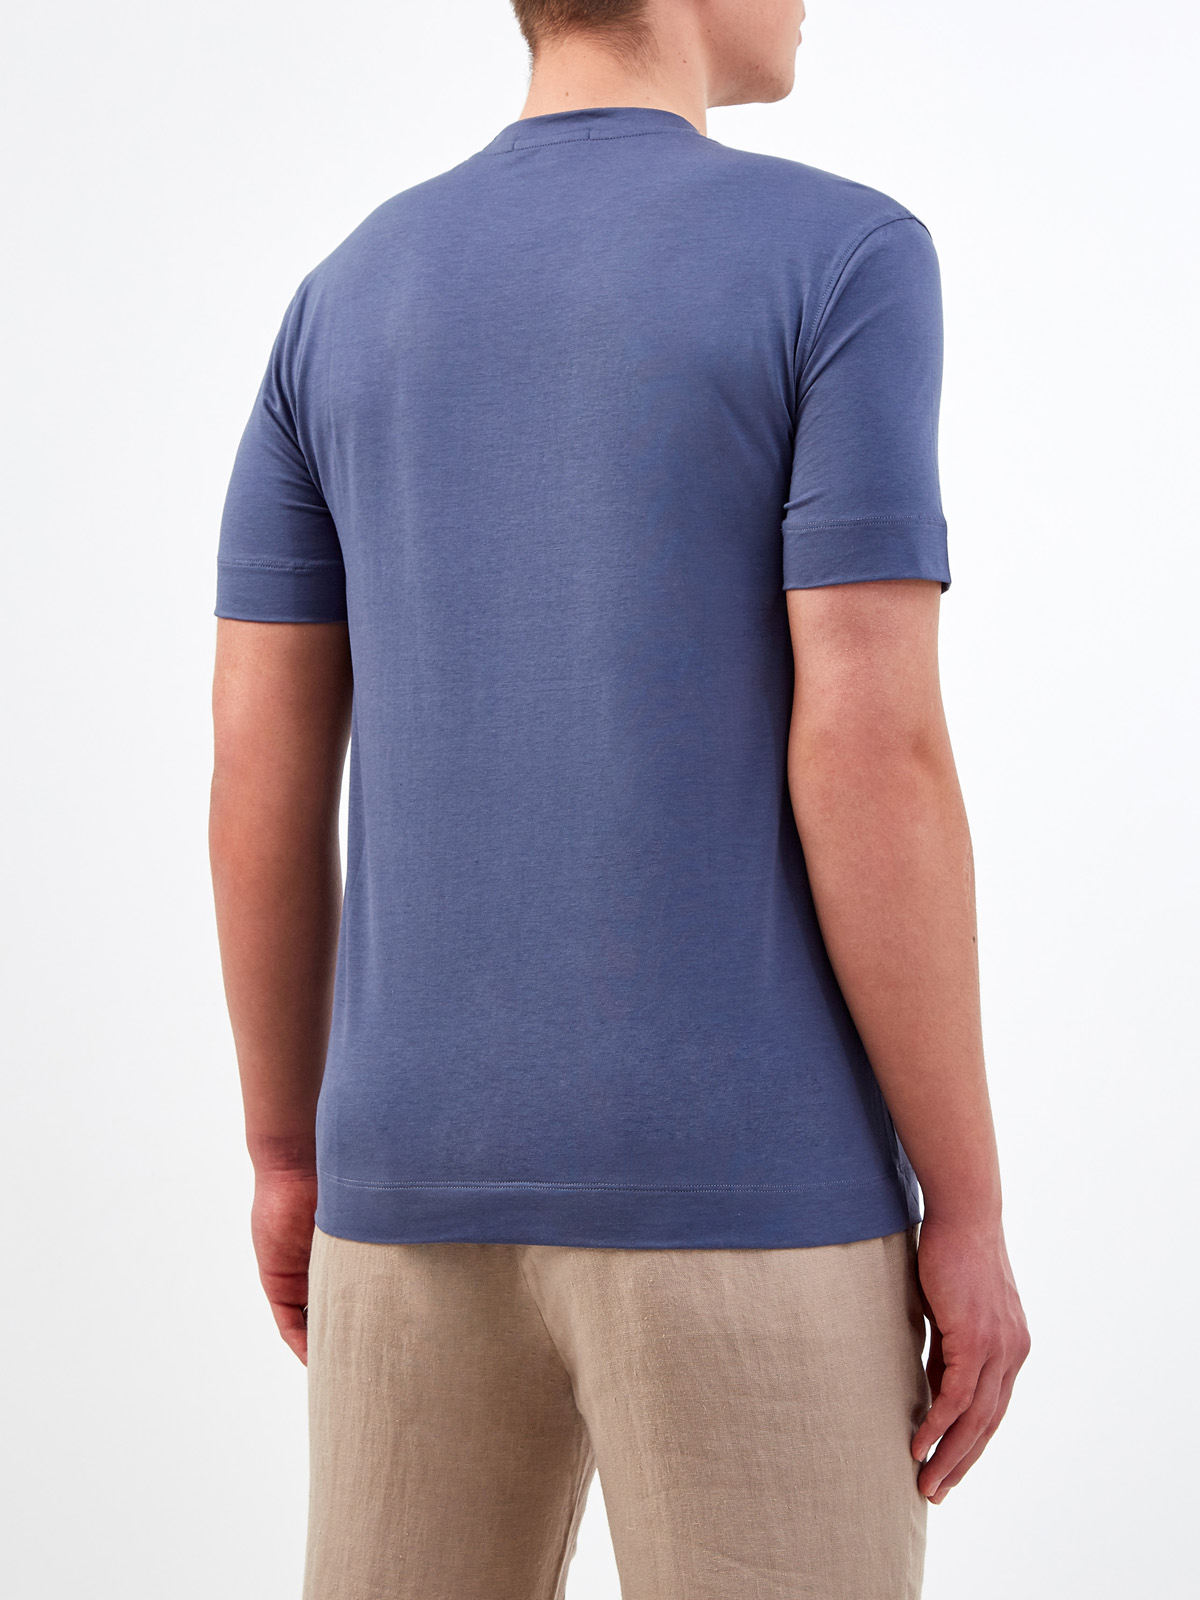 Однотонная футболка из джерси на основе хлопка и лиоцелла CUDGI, цвет синий, размер L;XL;2XL;3XL;M - фото 4